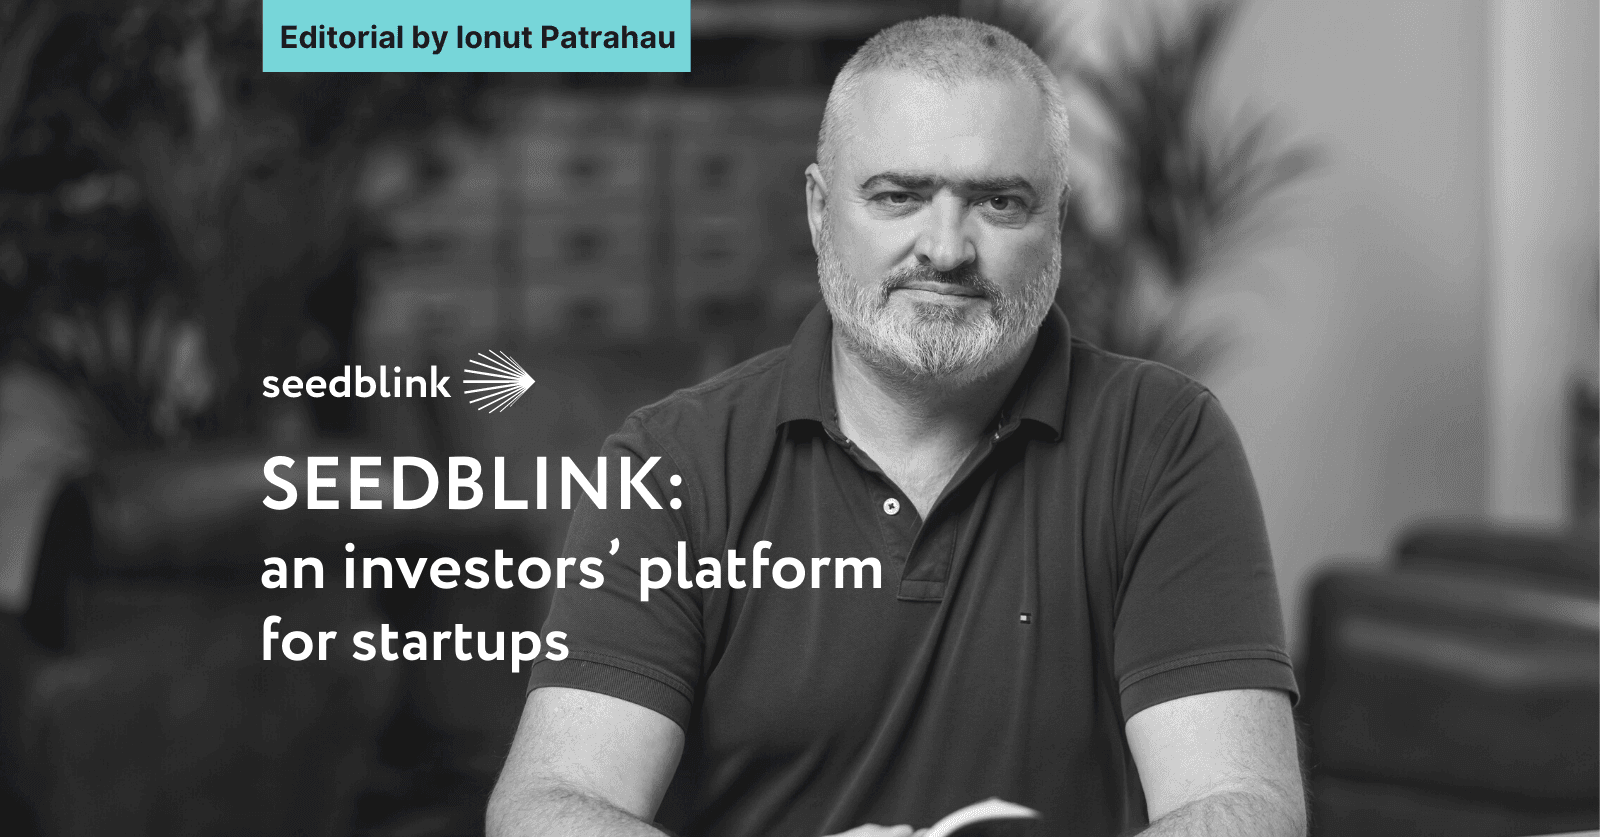 SEEDBLINK: an investors’ platform for startups